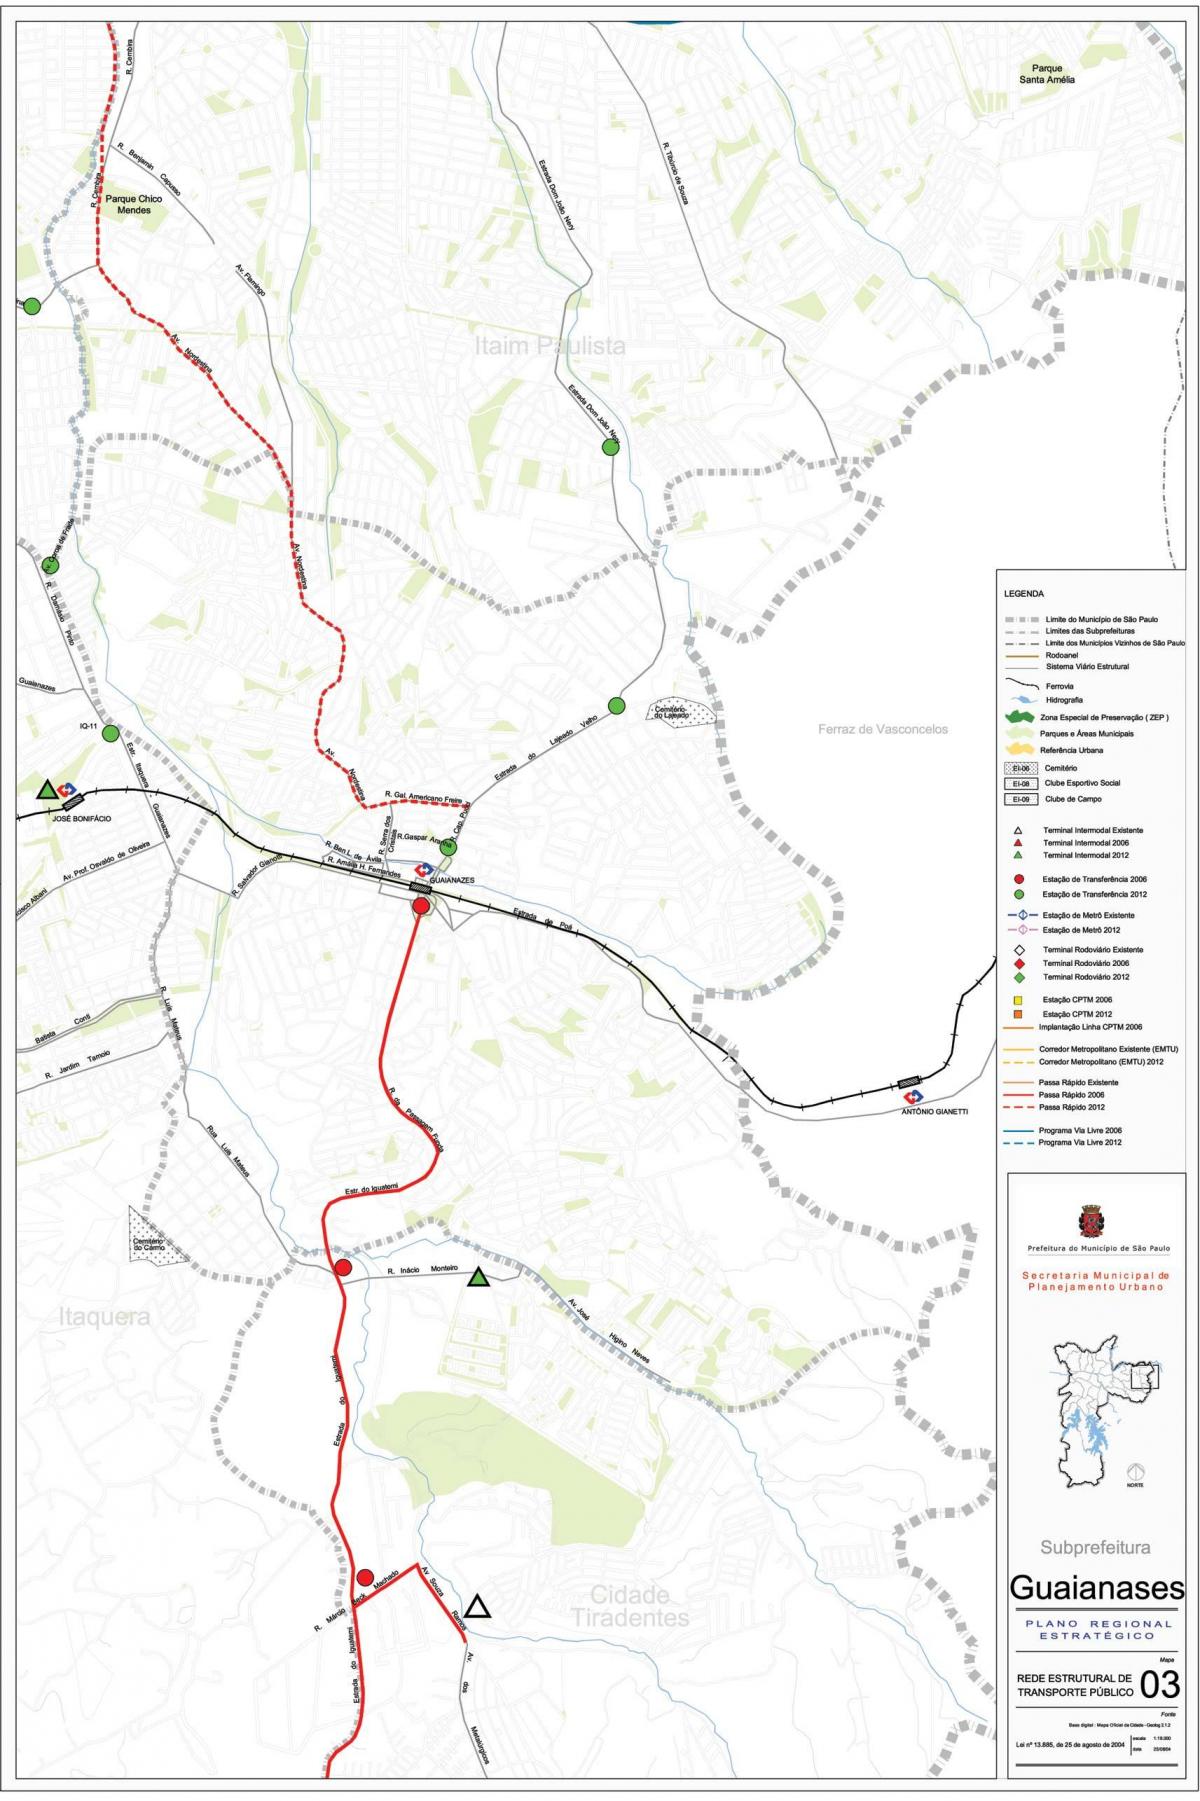 Mapa de Guaianases Galicia - Público de transportes